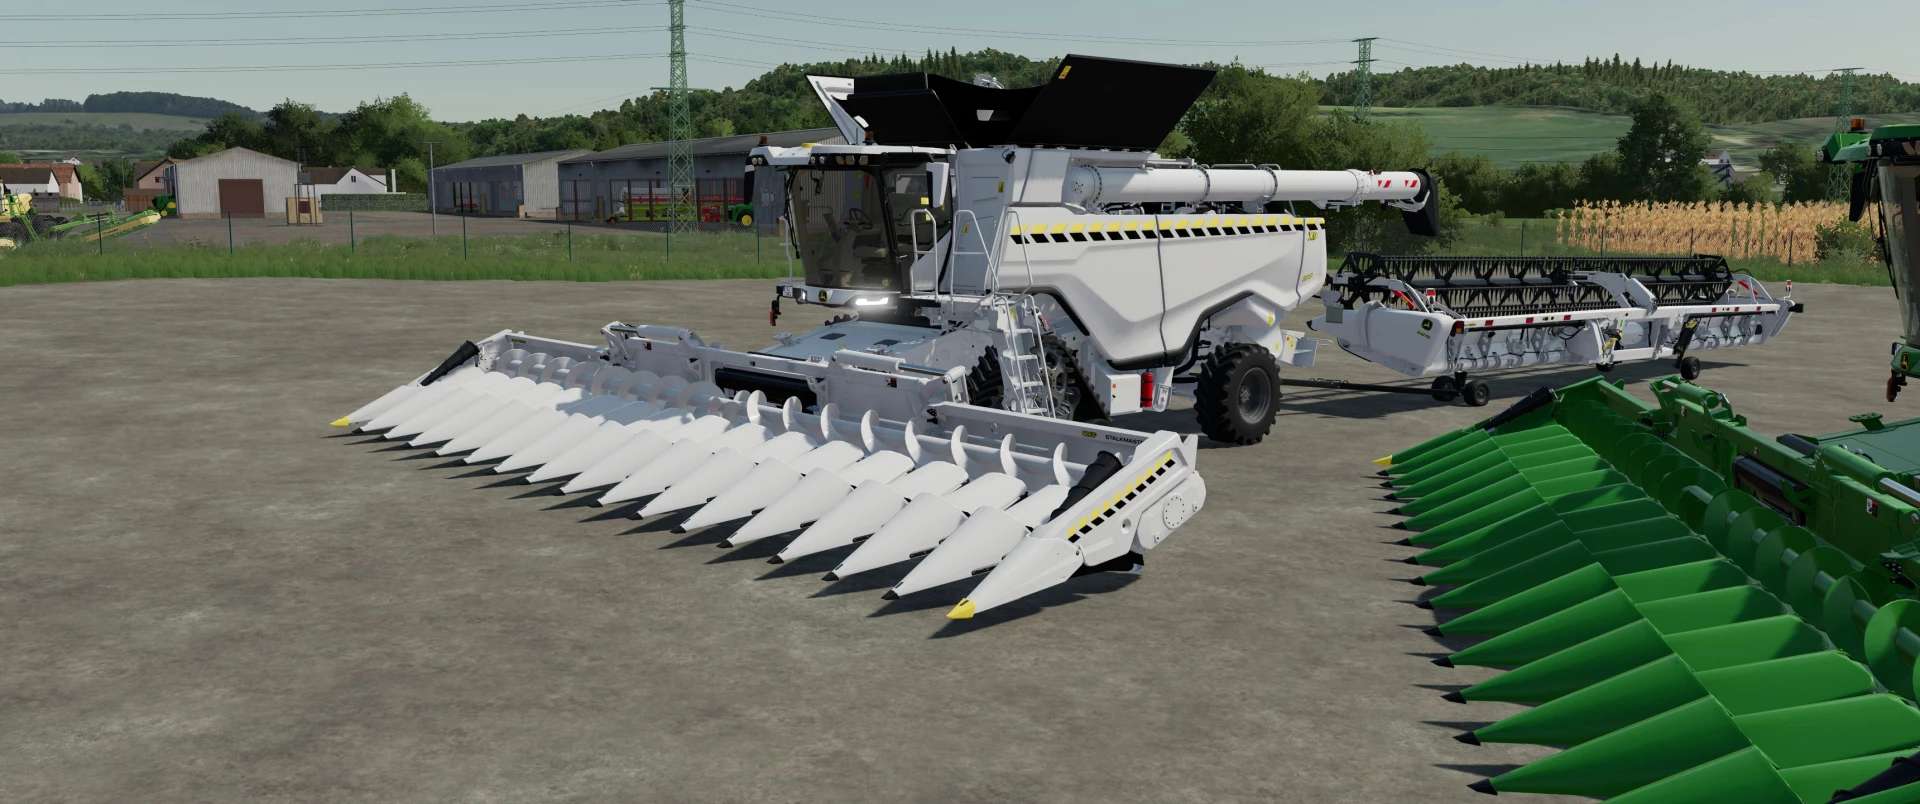 John Deere X9 White v1.0.0.0 Mod Farming Simulator 2022 / 19 mod